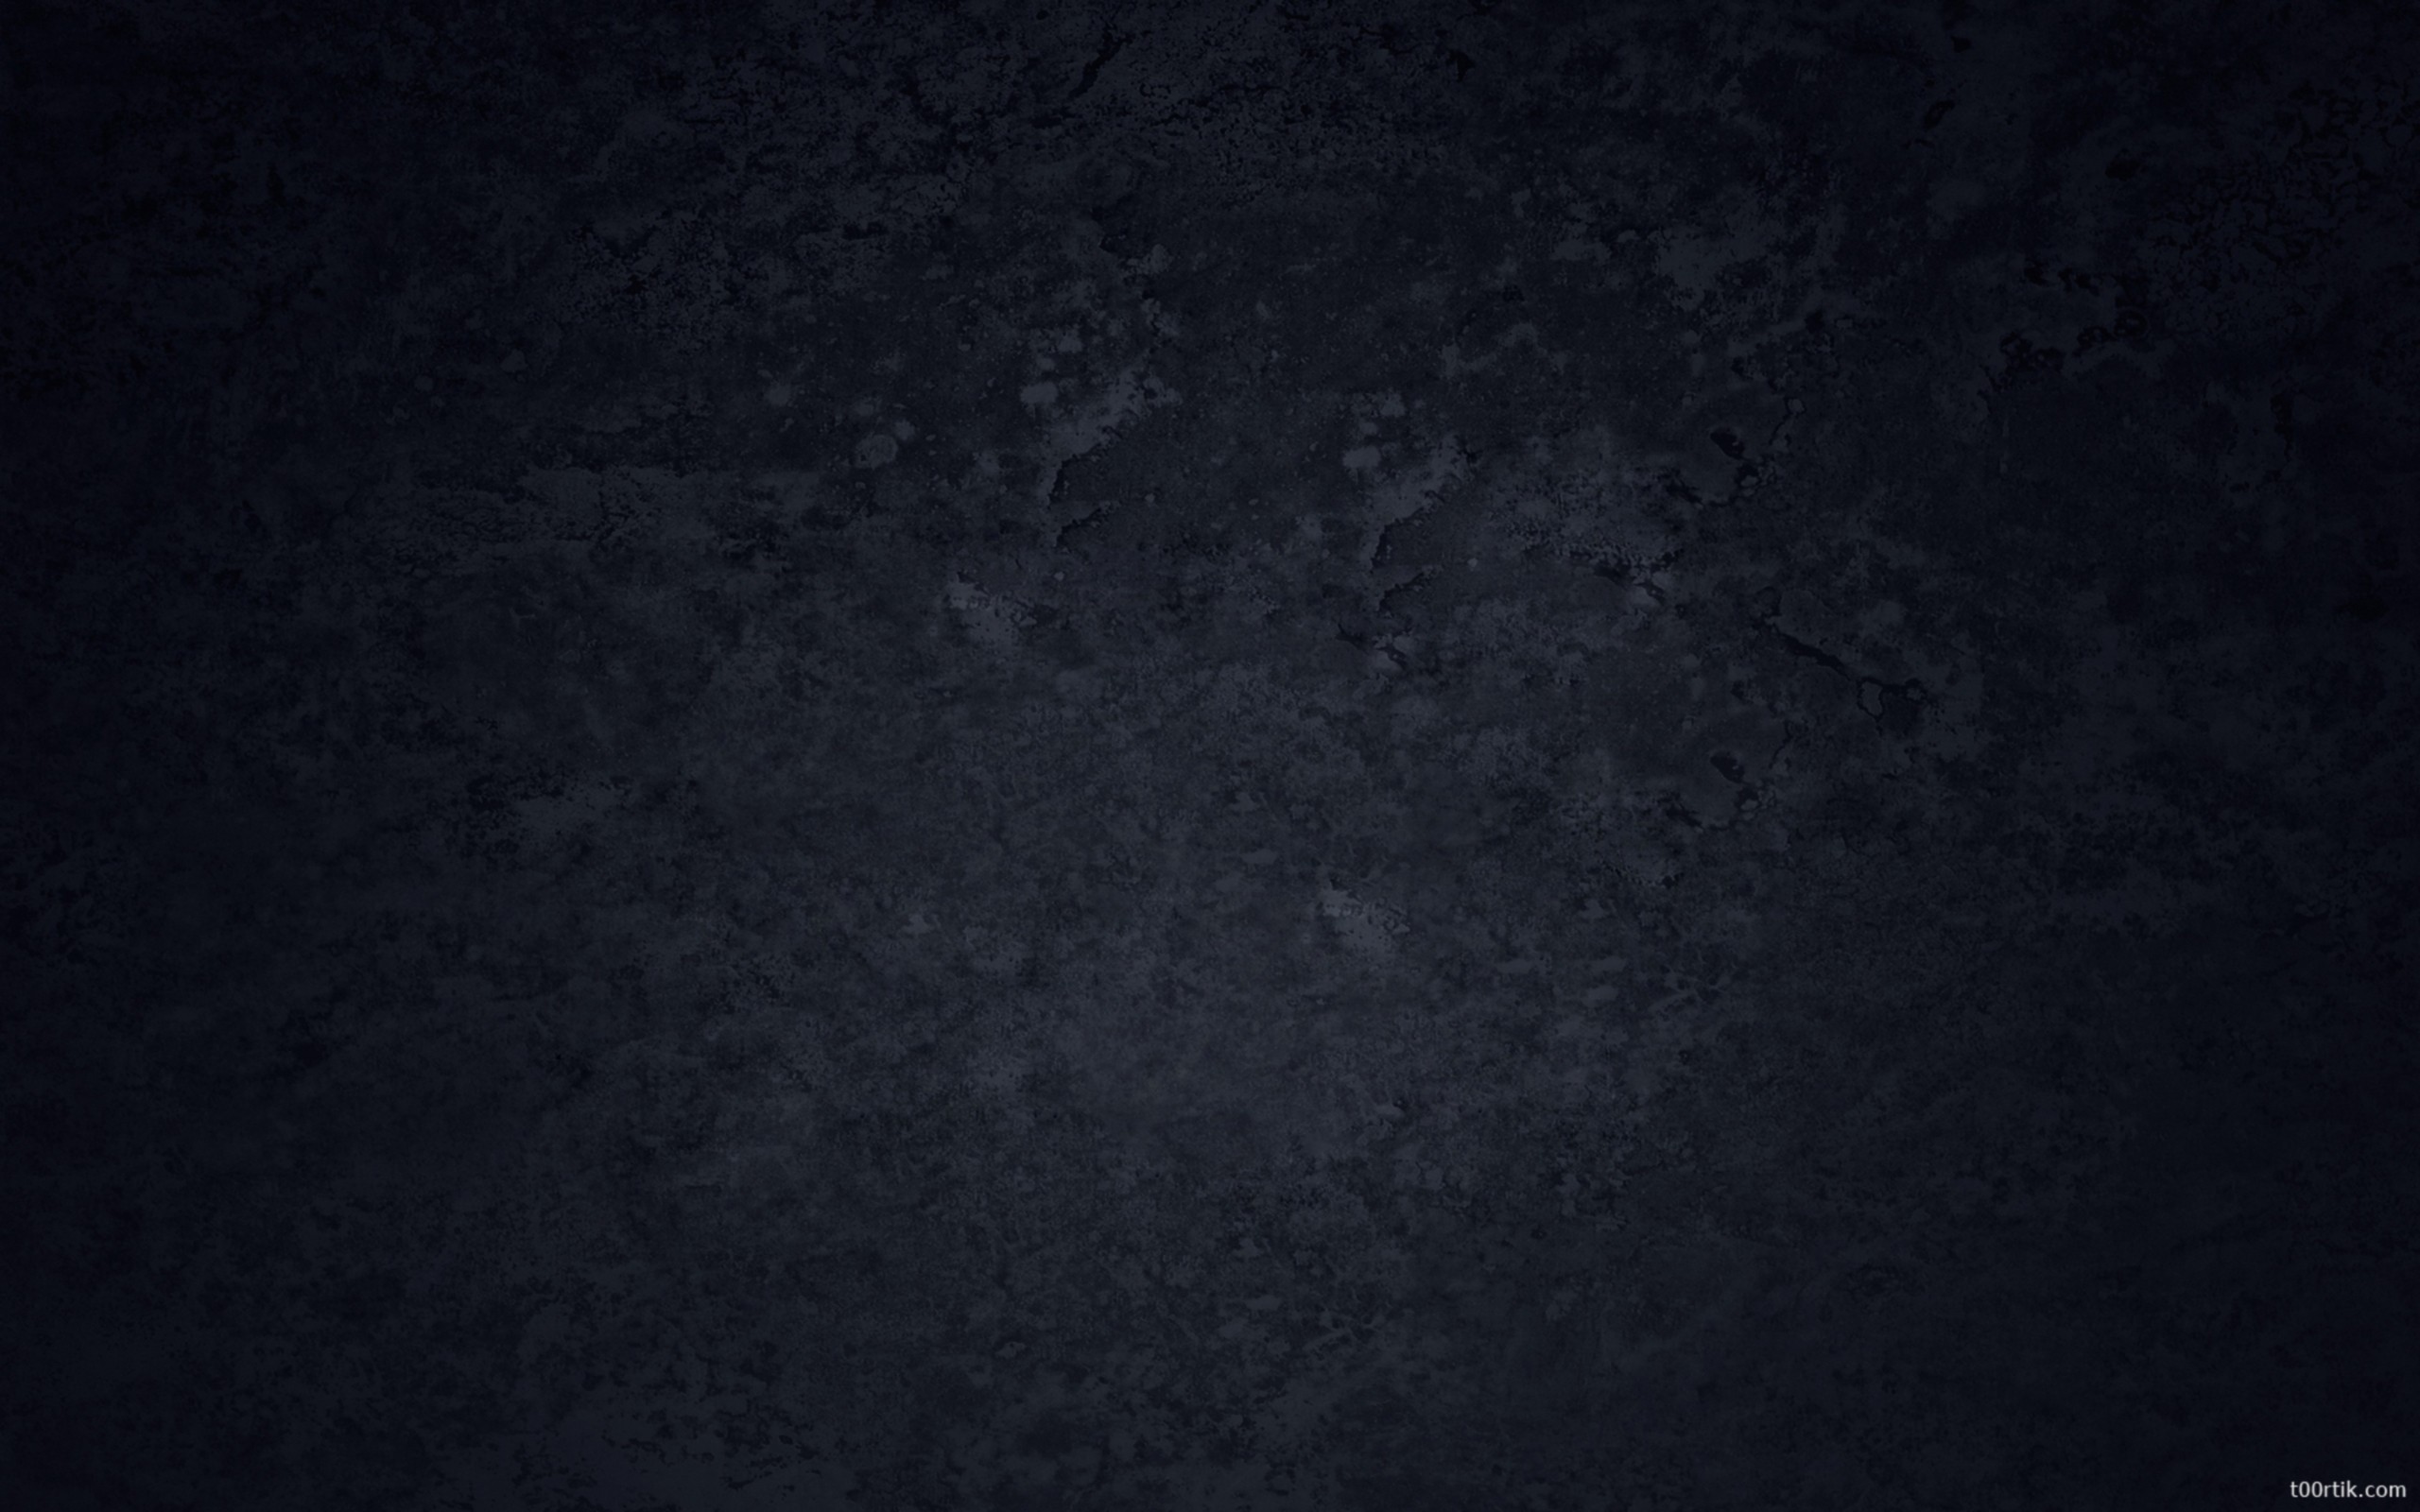 General 2560x1600 minimalism dark black texture watermarked